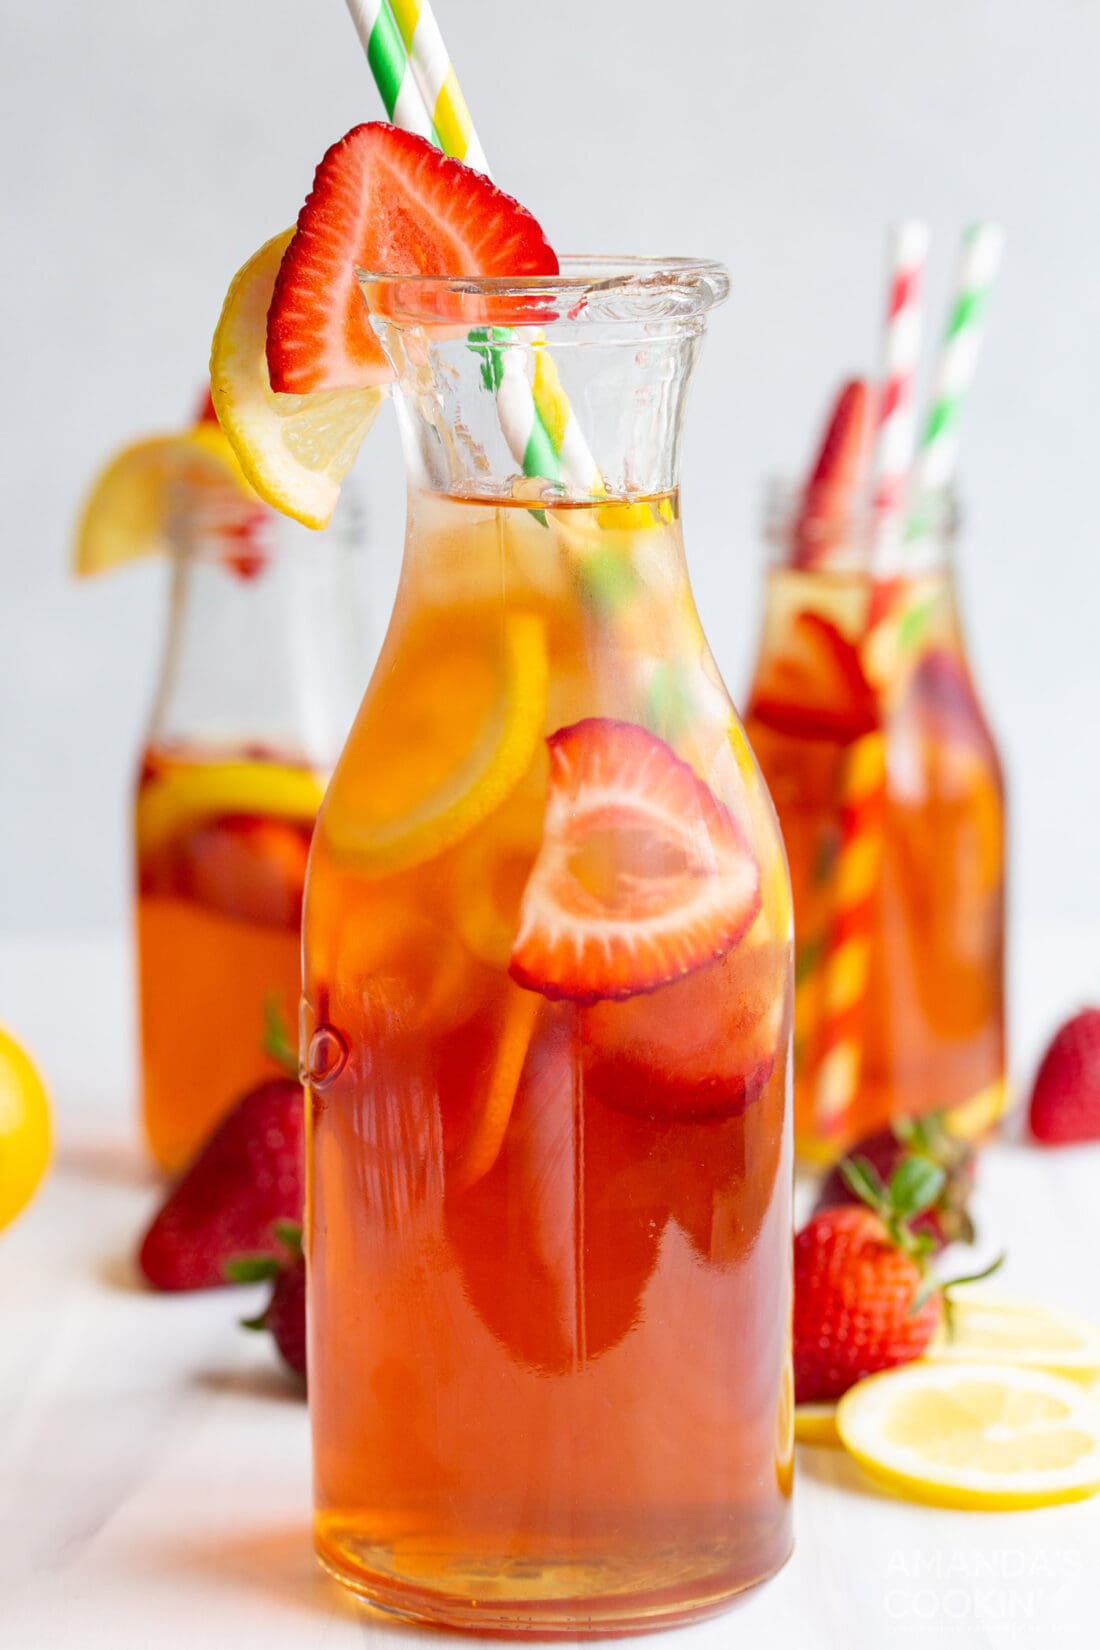 strawberry sweet tea in a bottle